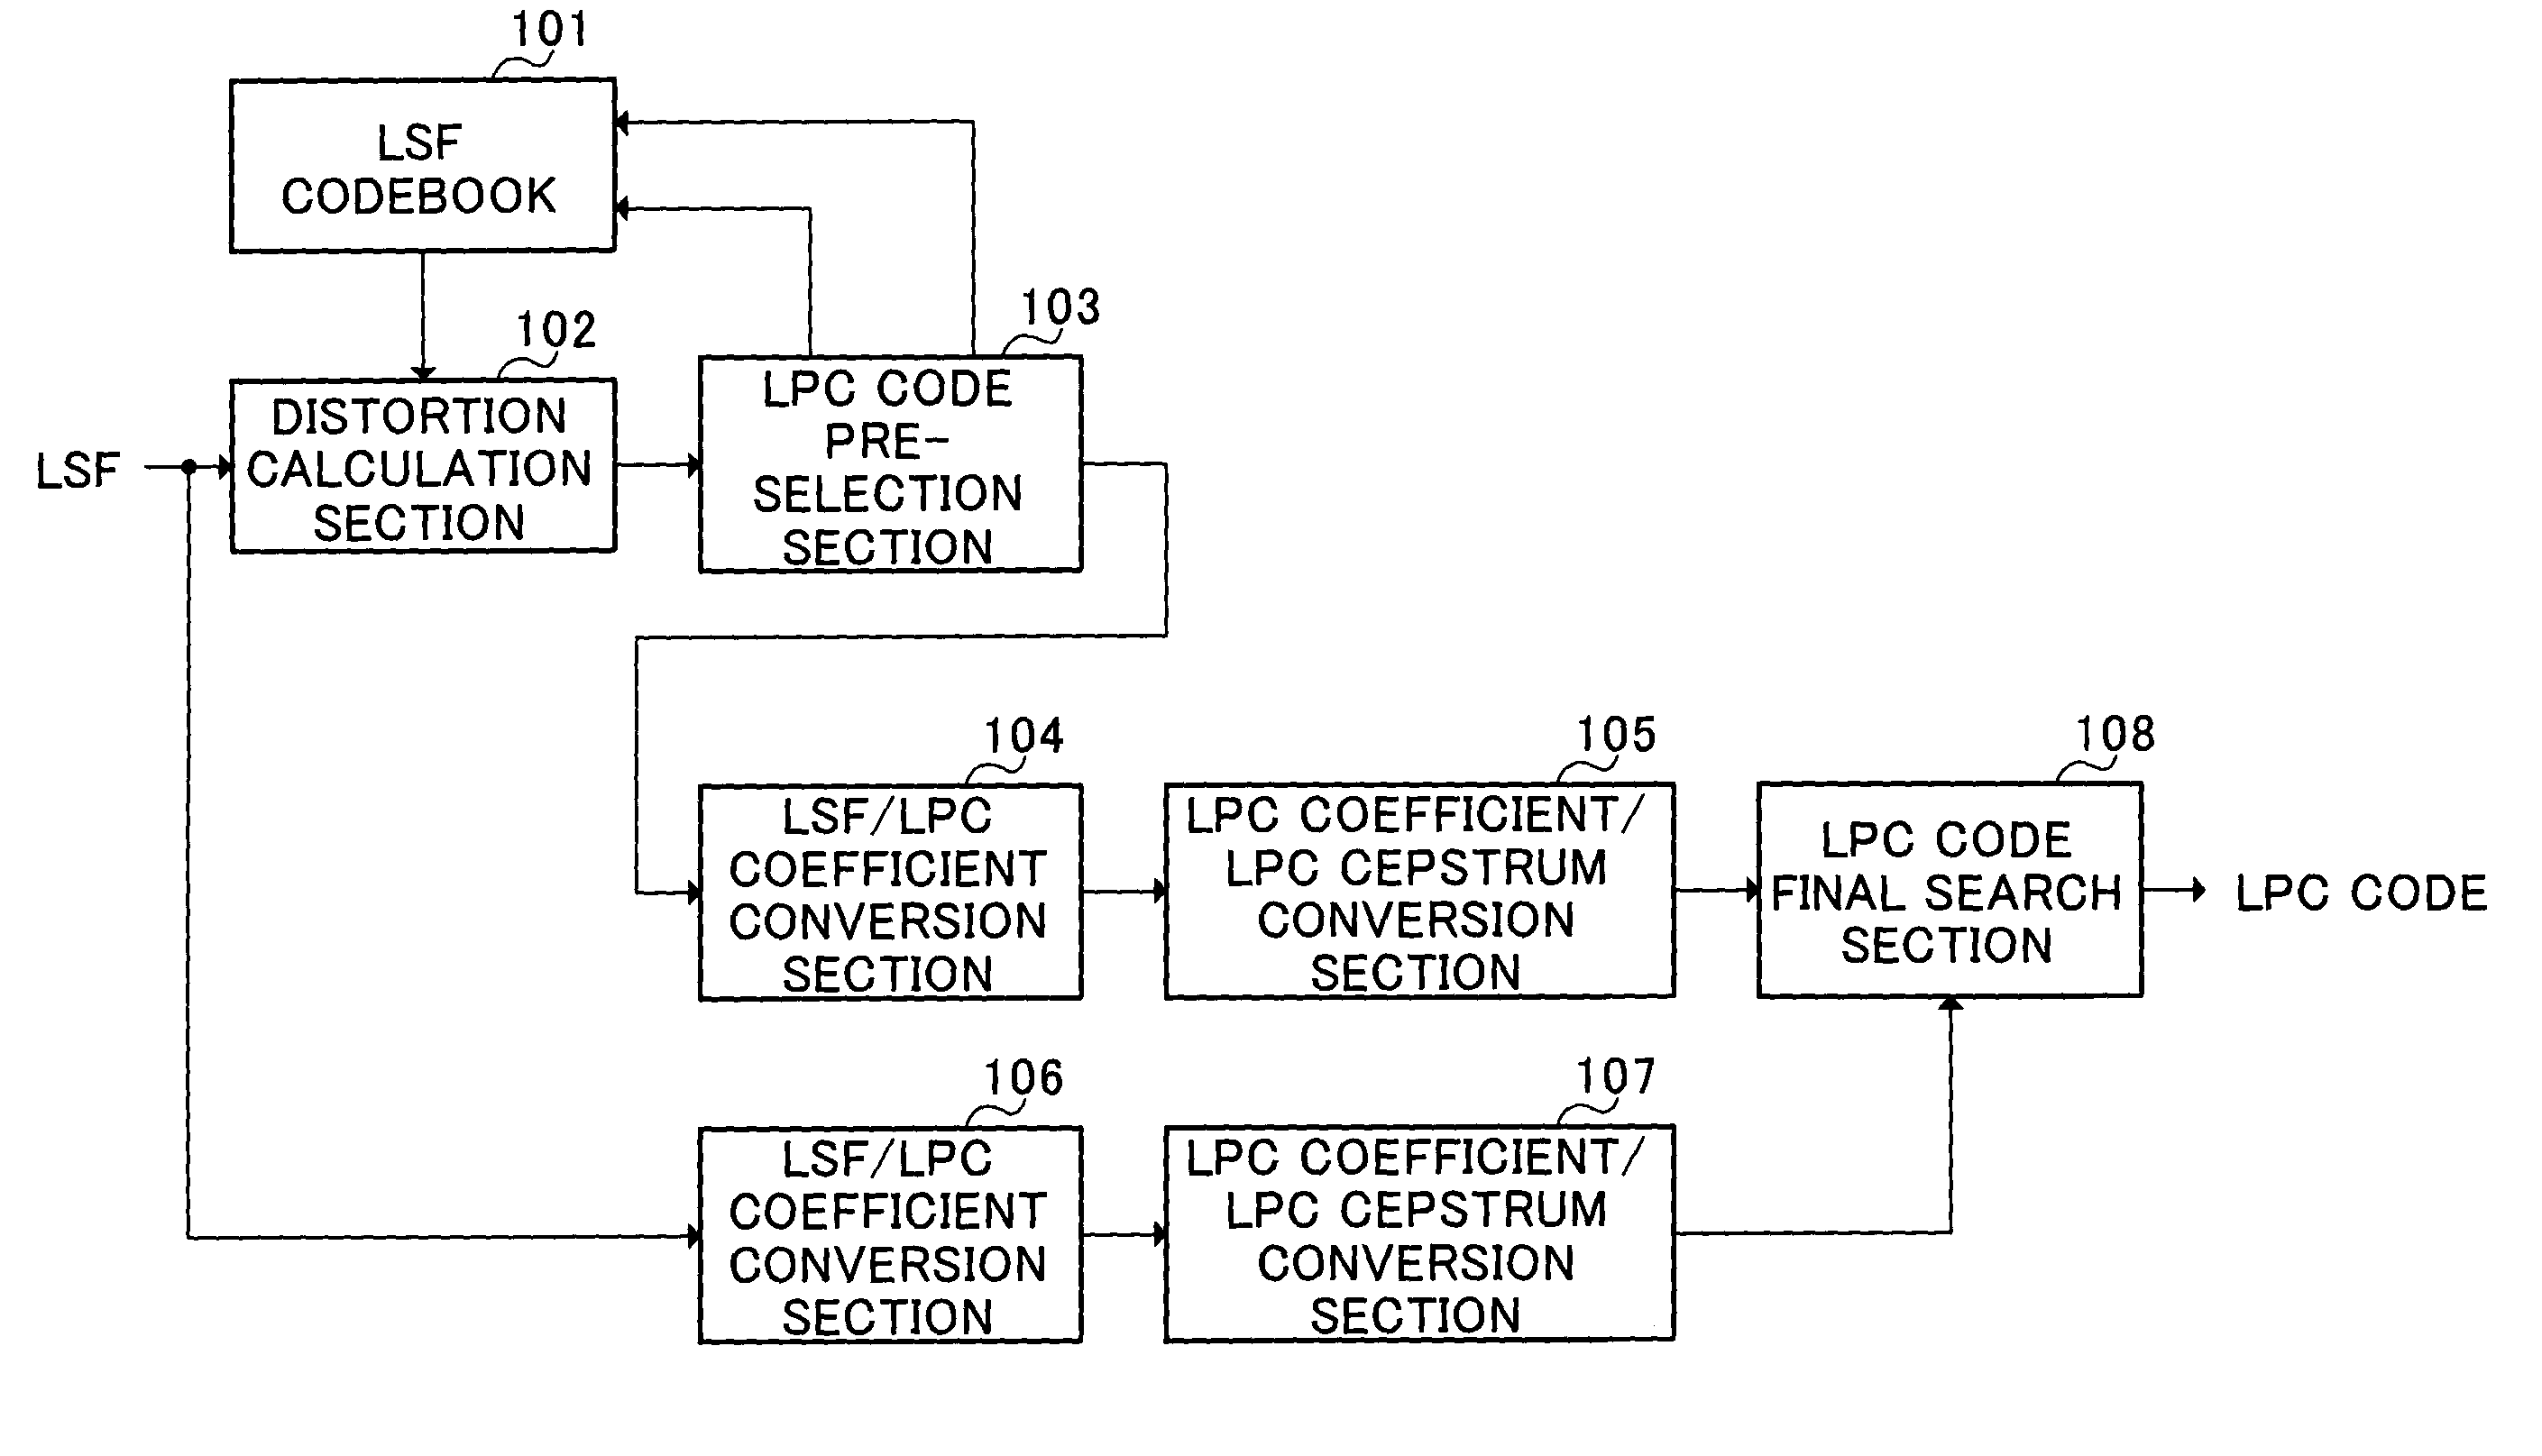 LPC vector quantization apparatus